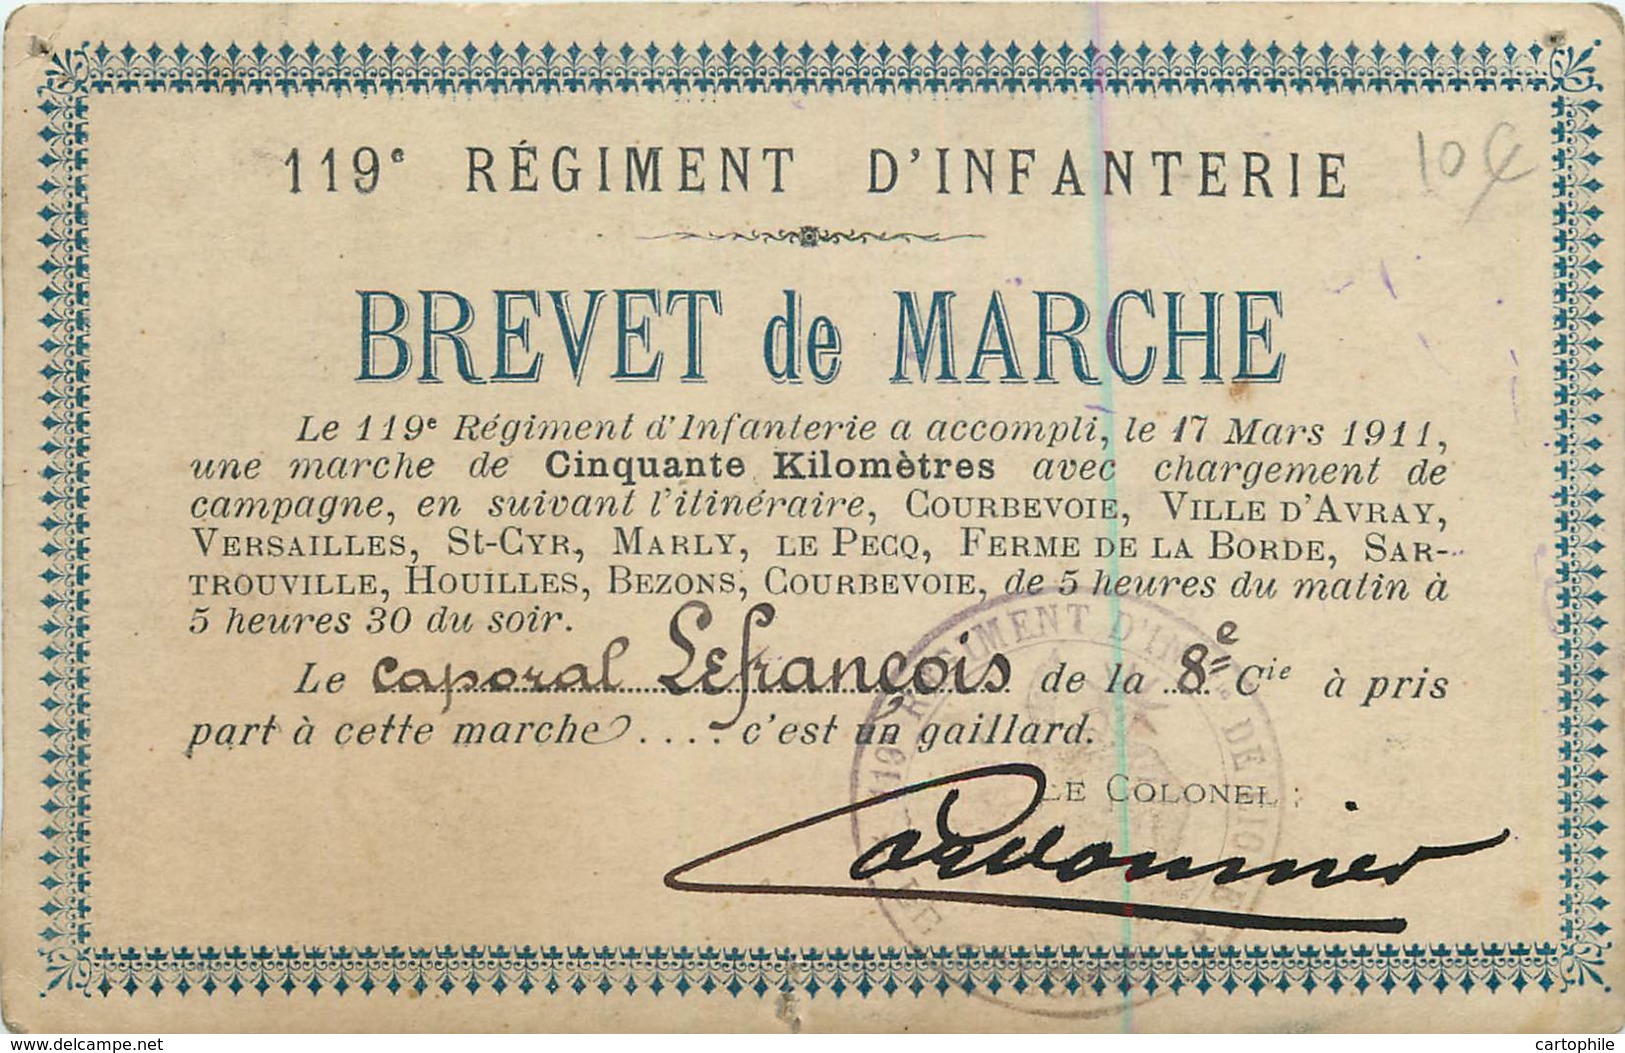 Carte Photo D'un Brevet De Marche Du 119e RI En 1911 - Caporal Lefrançois Signé Par Le Colonel Cordonnier - Manovre